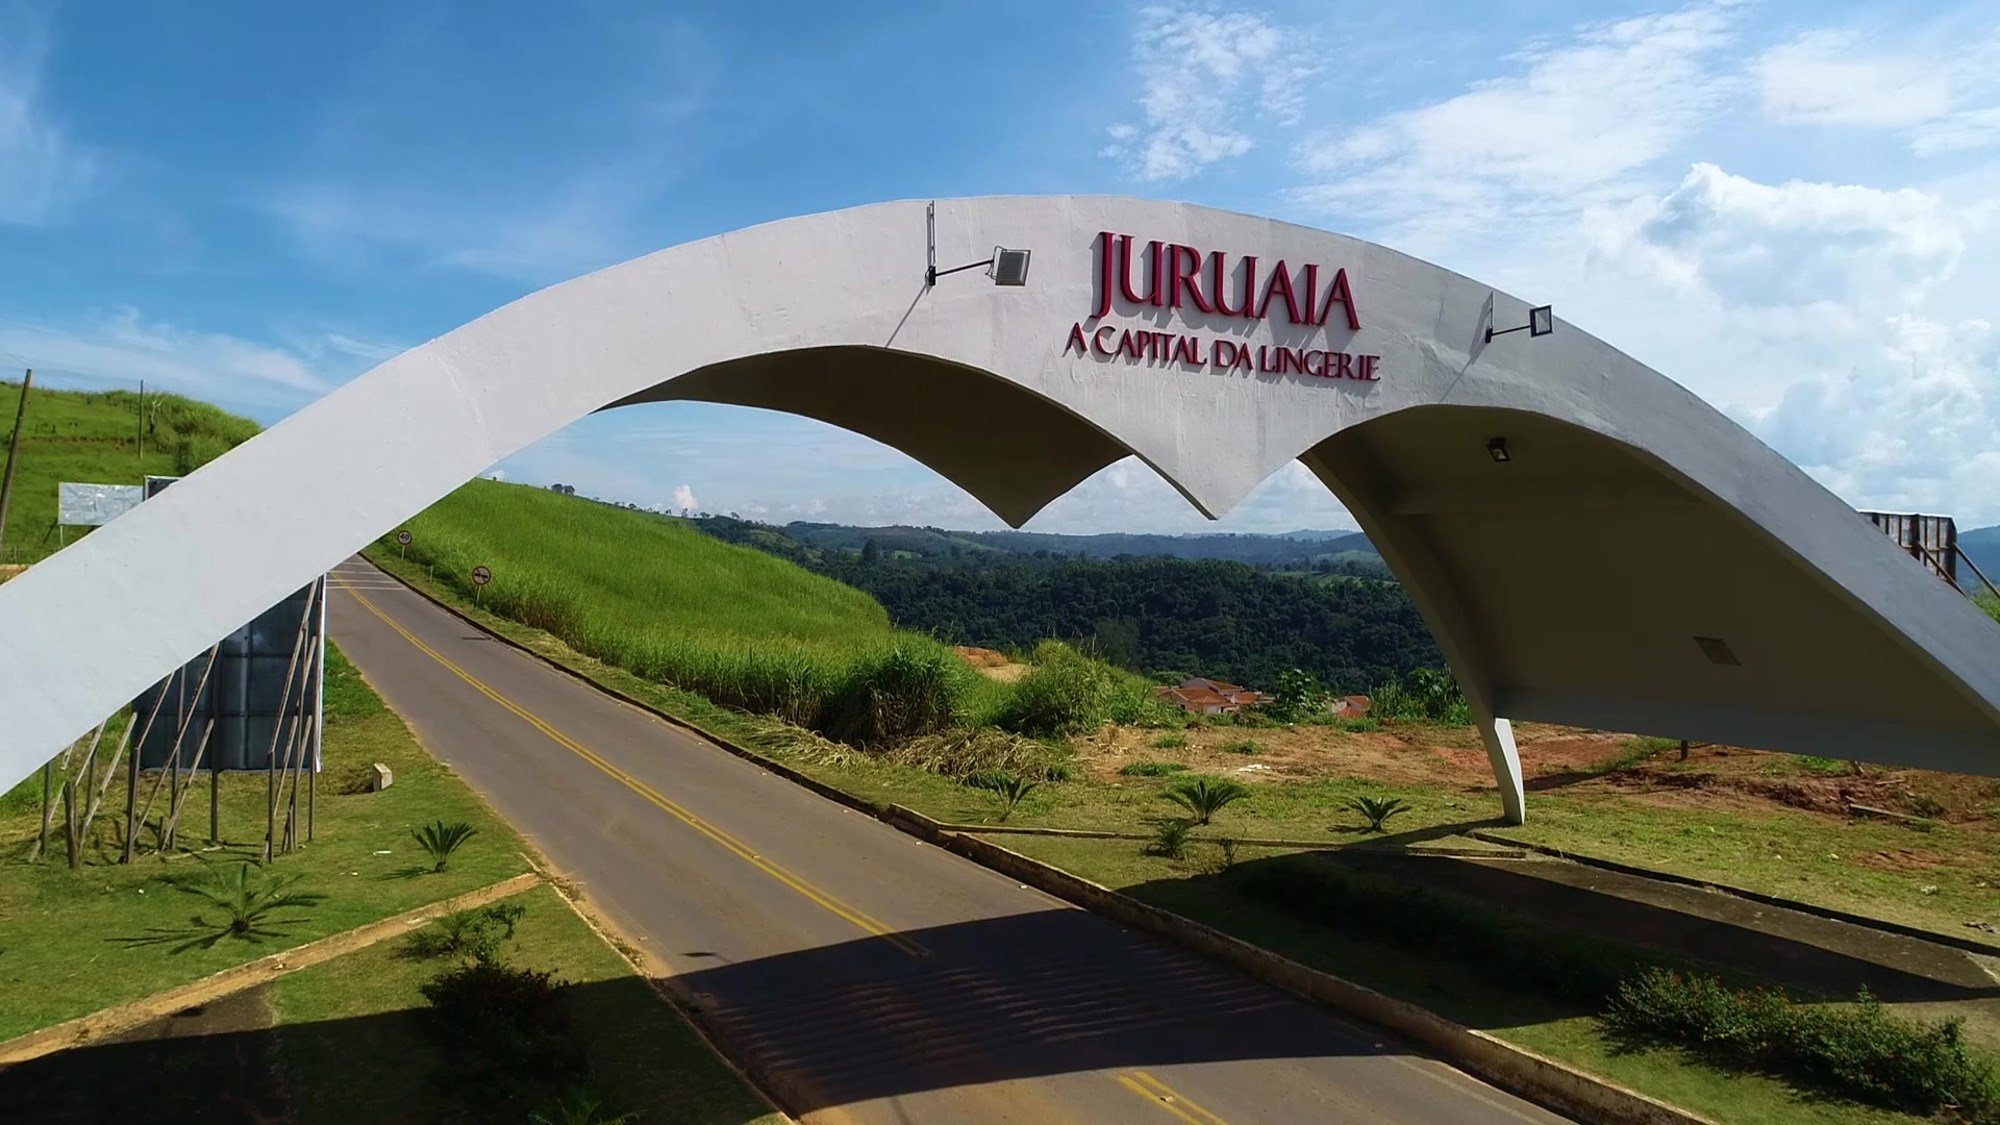 Juruaia-MG a Capital da Lingerie